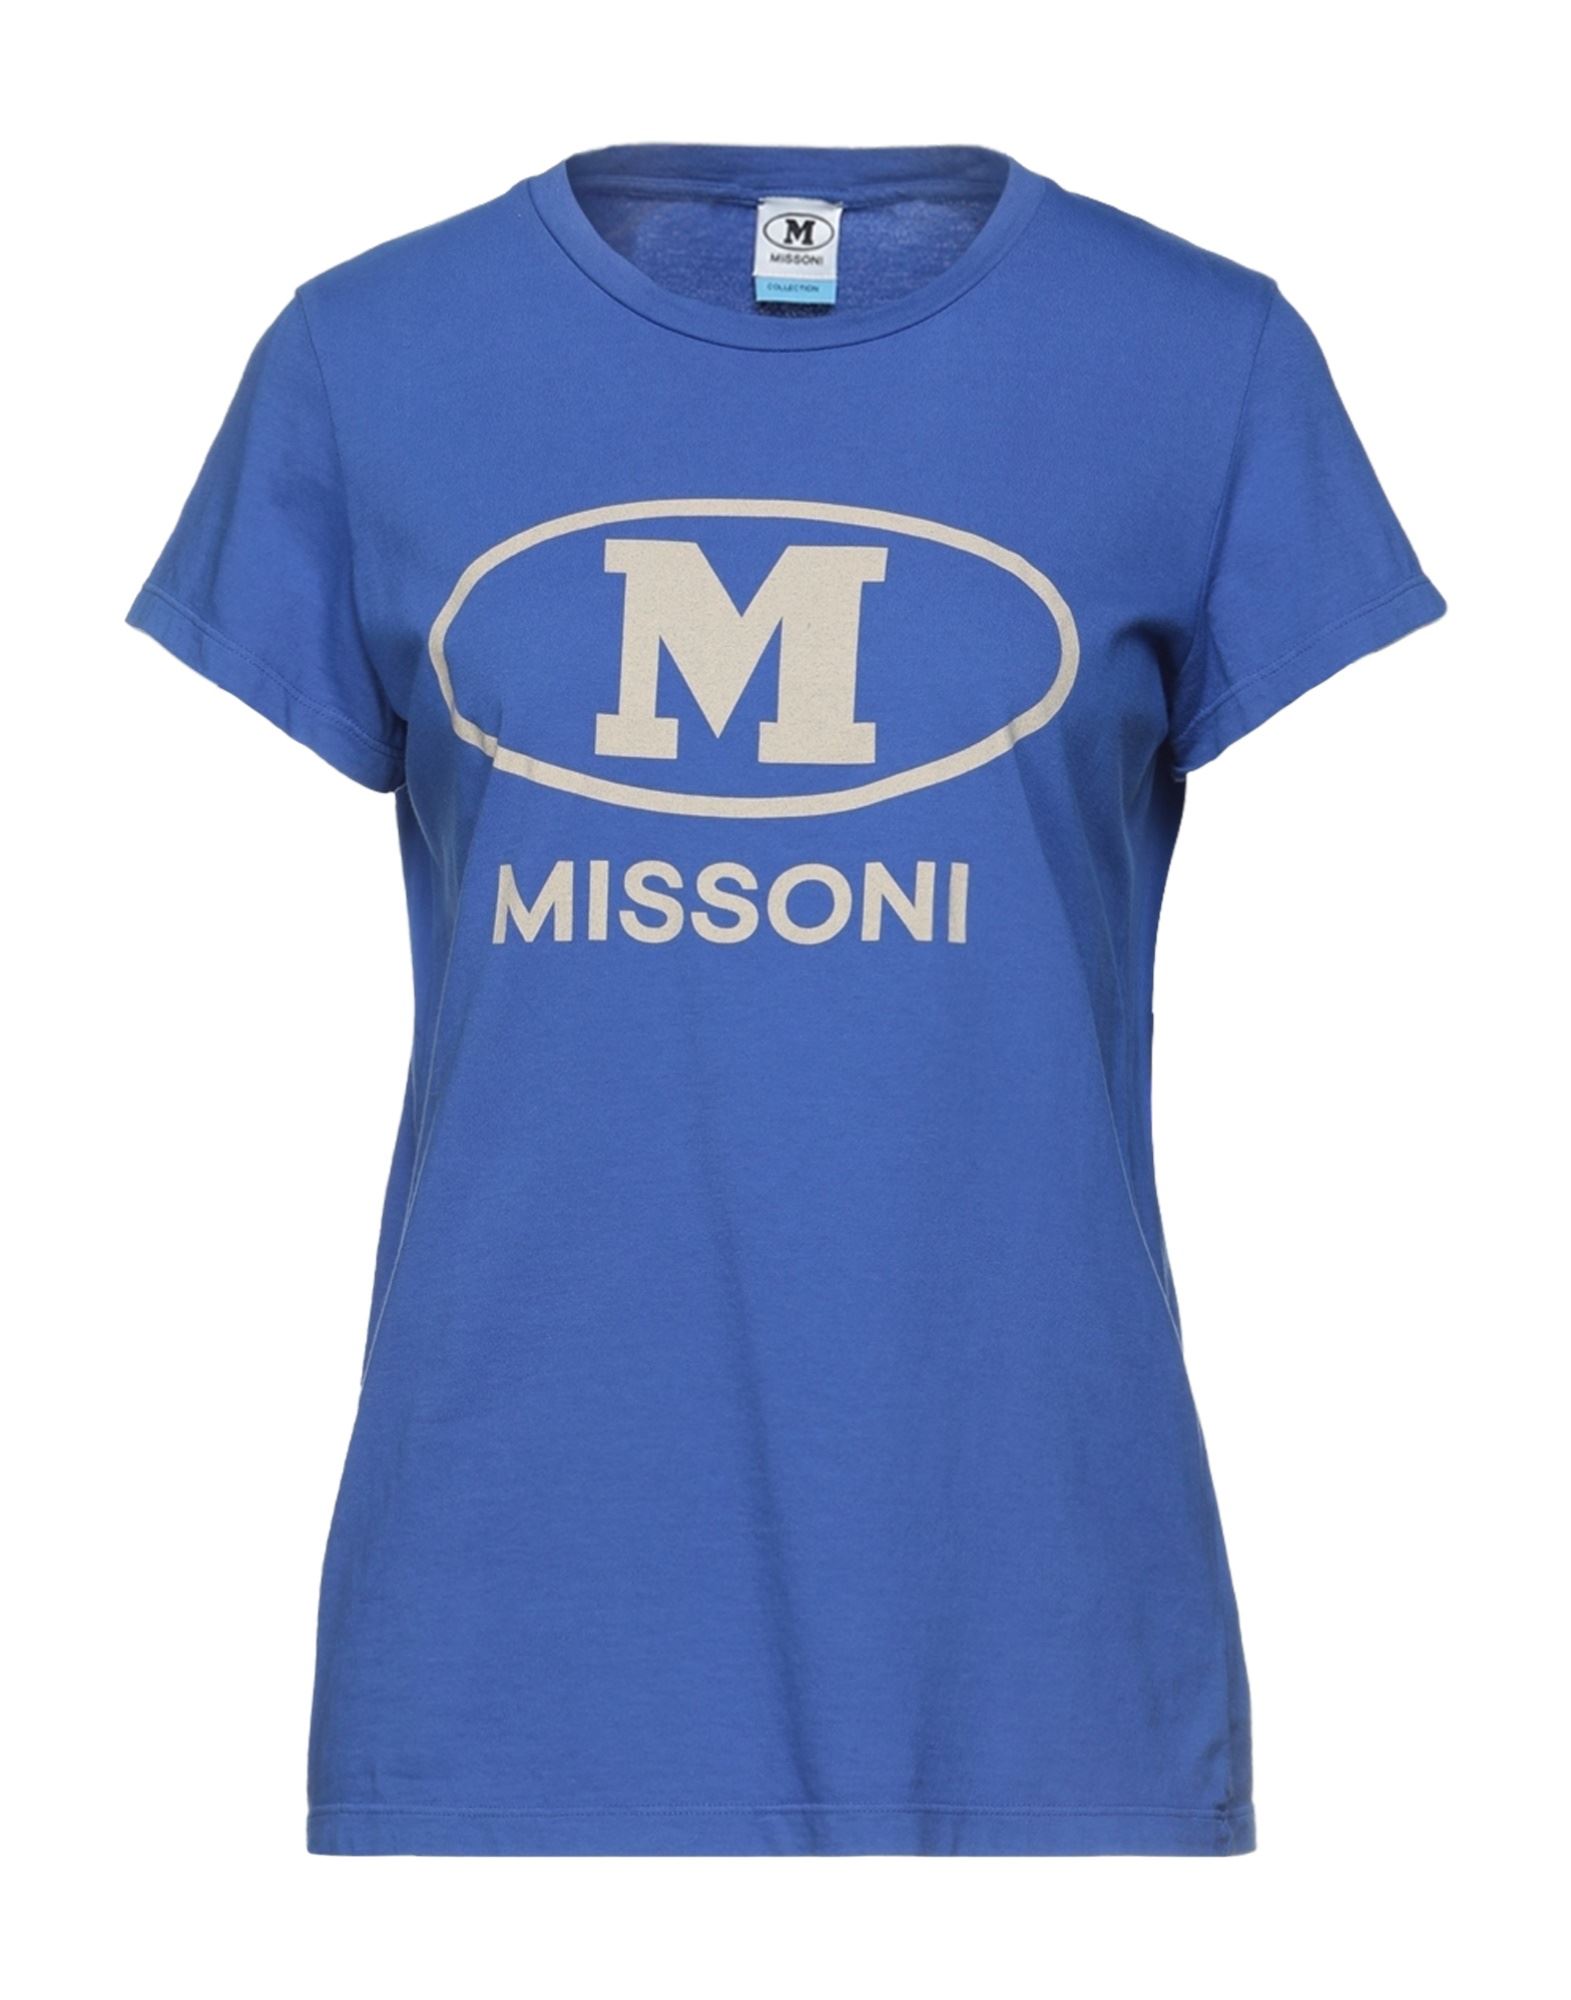 M Missoni T-shirts In Blue